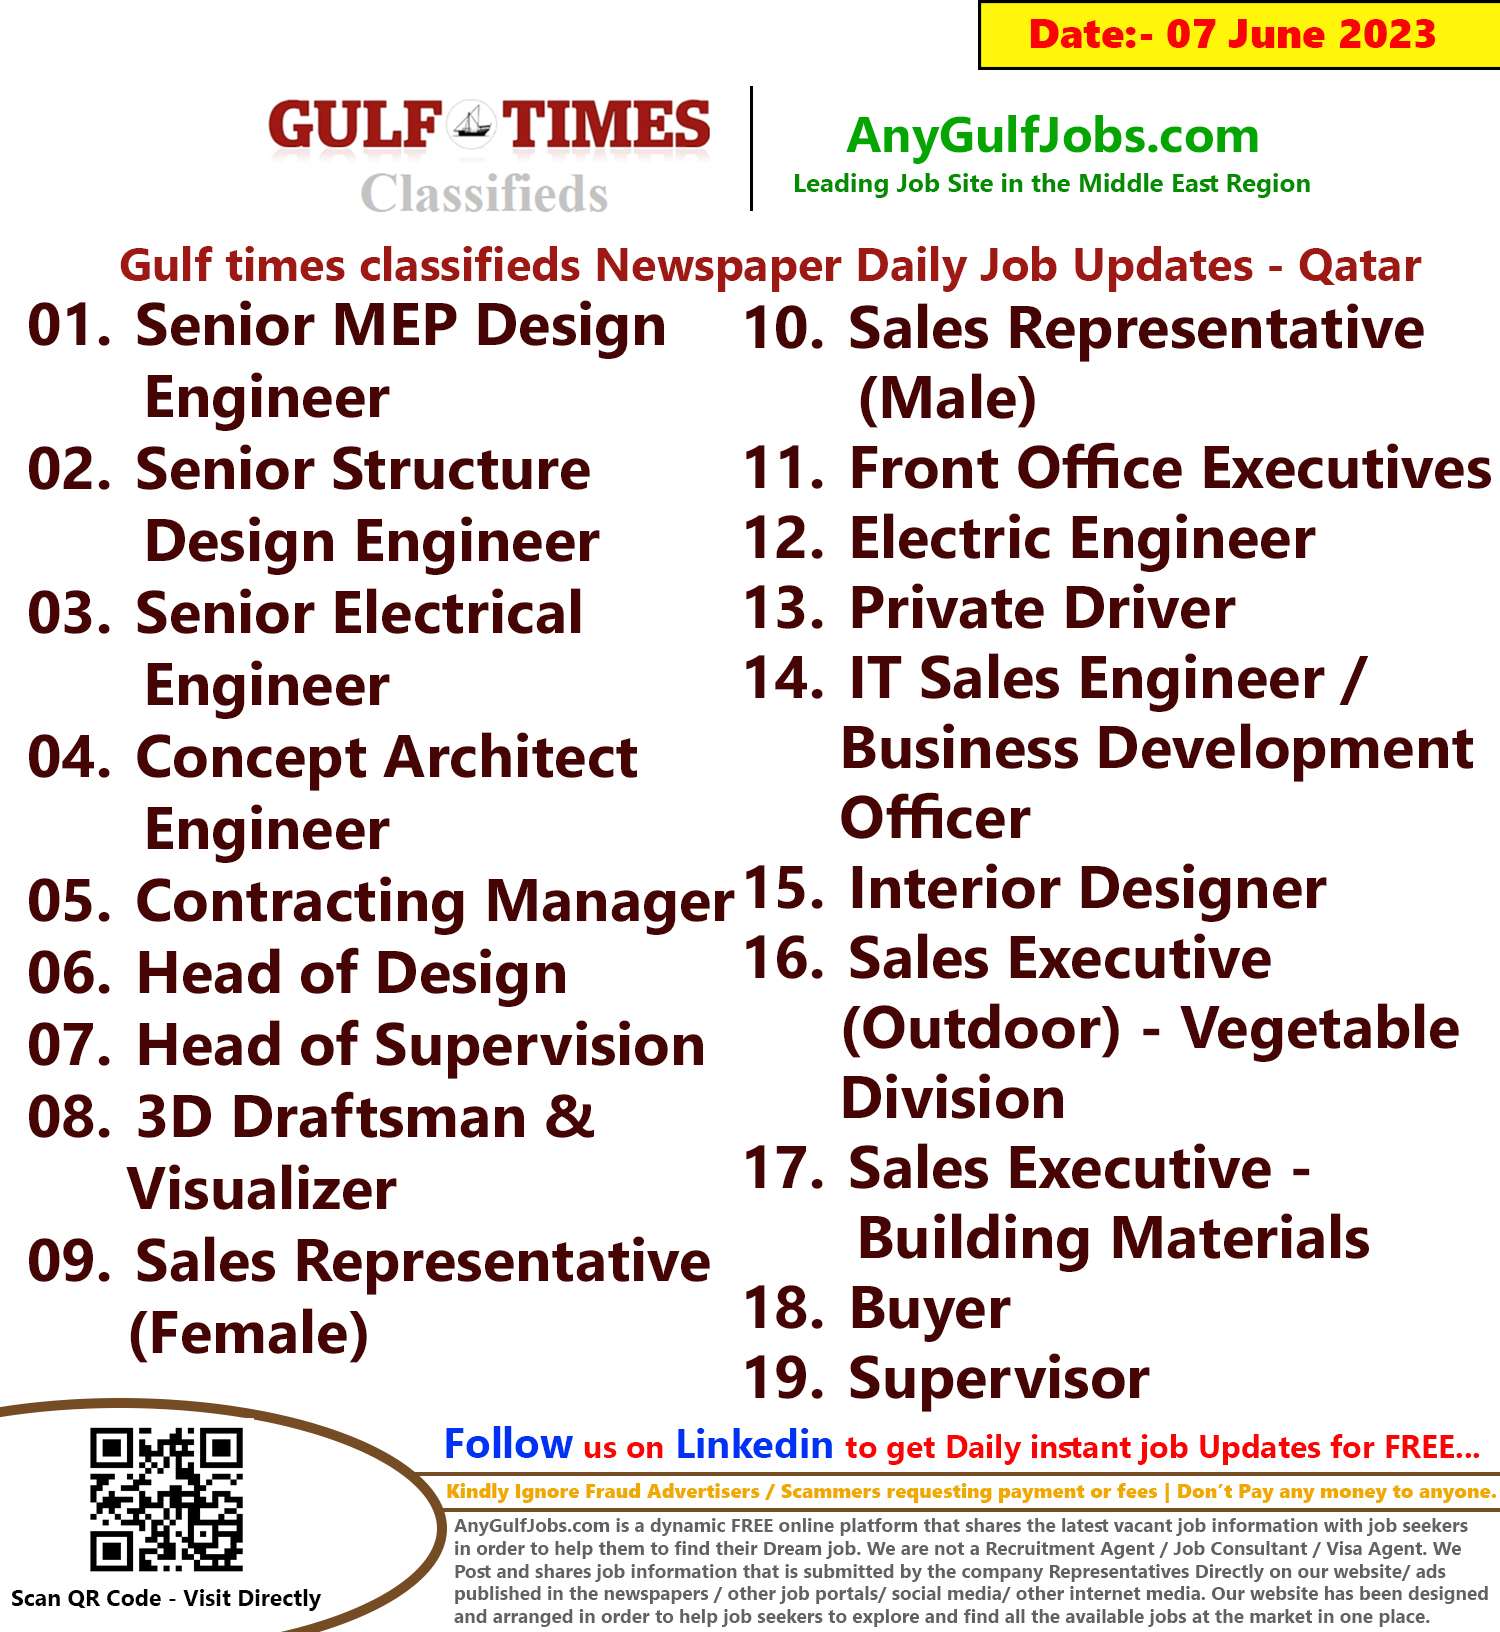 Gulf times classifieds Job Vacancies Qatar - 07 June 2023